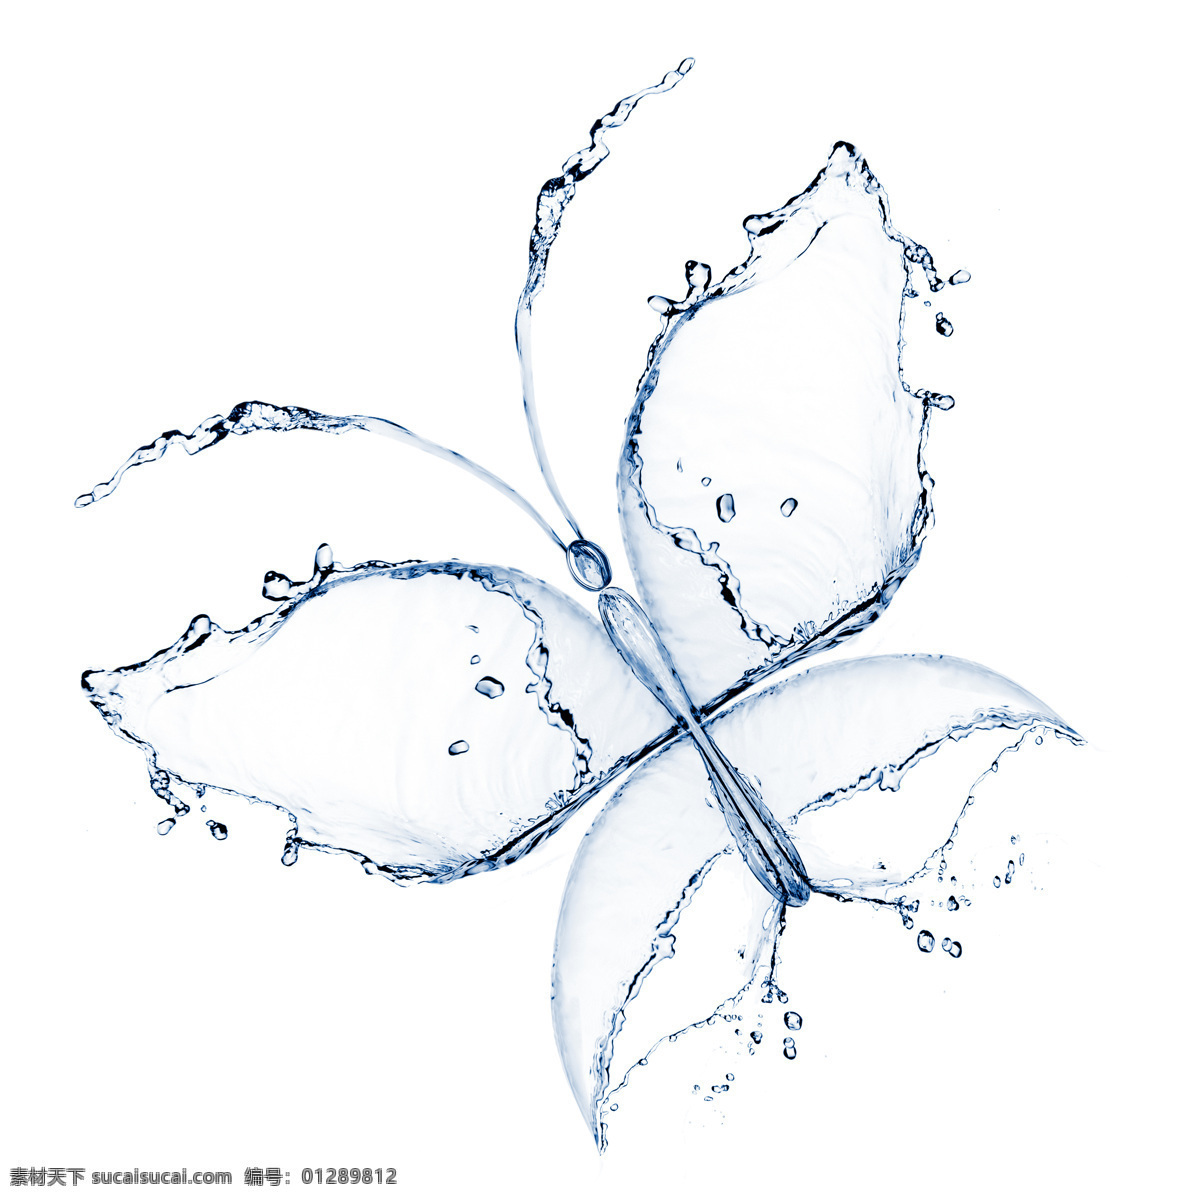 创意 水 组成 蝴蝶 图案 高清 大图 水滴